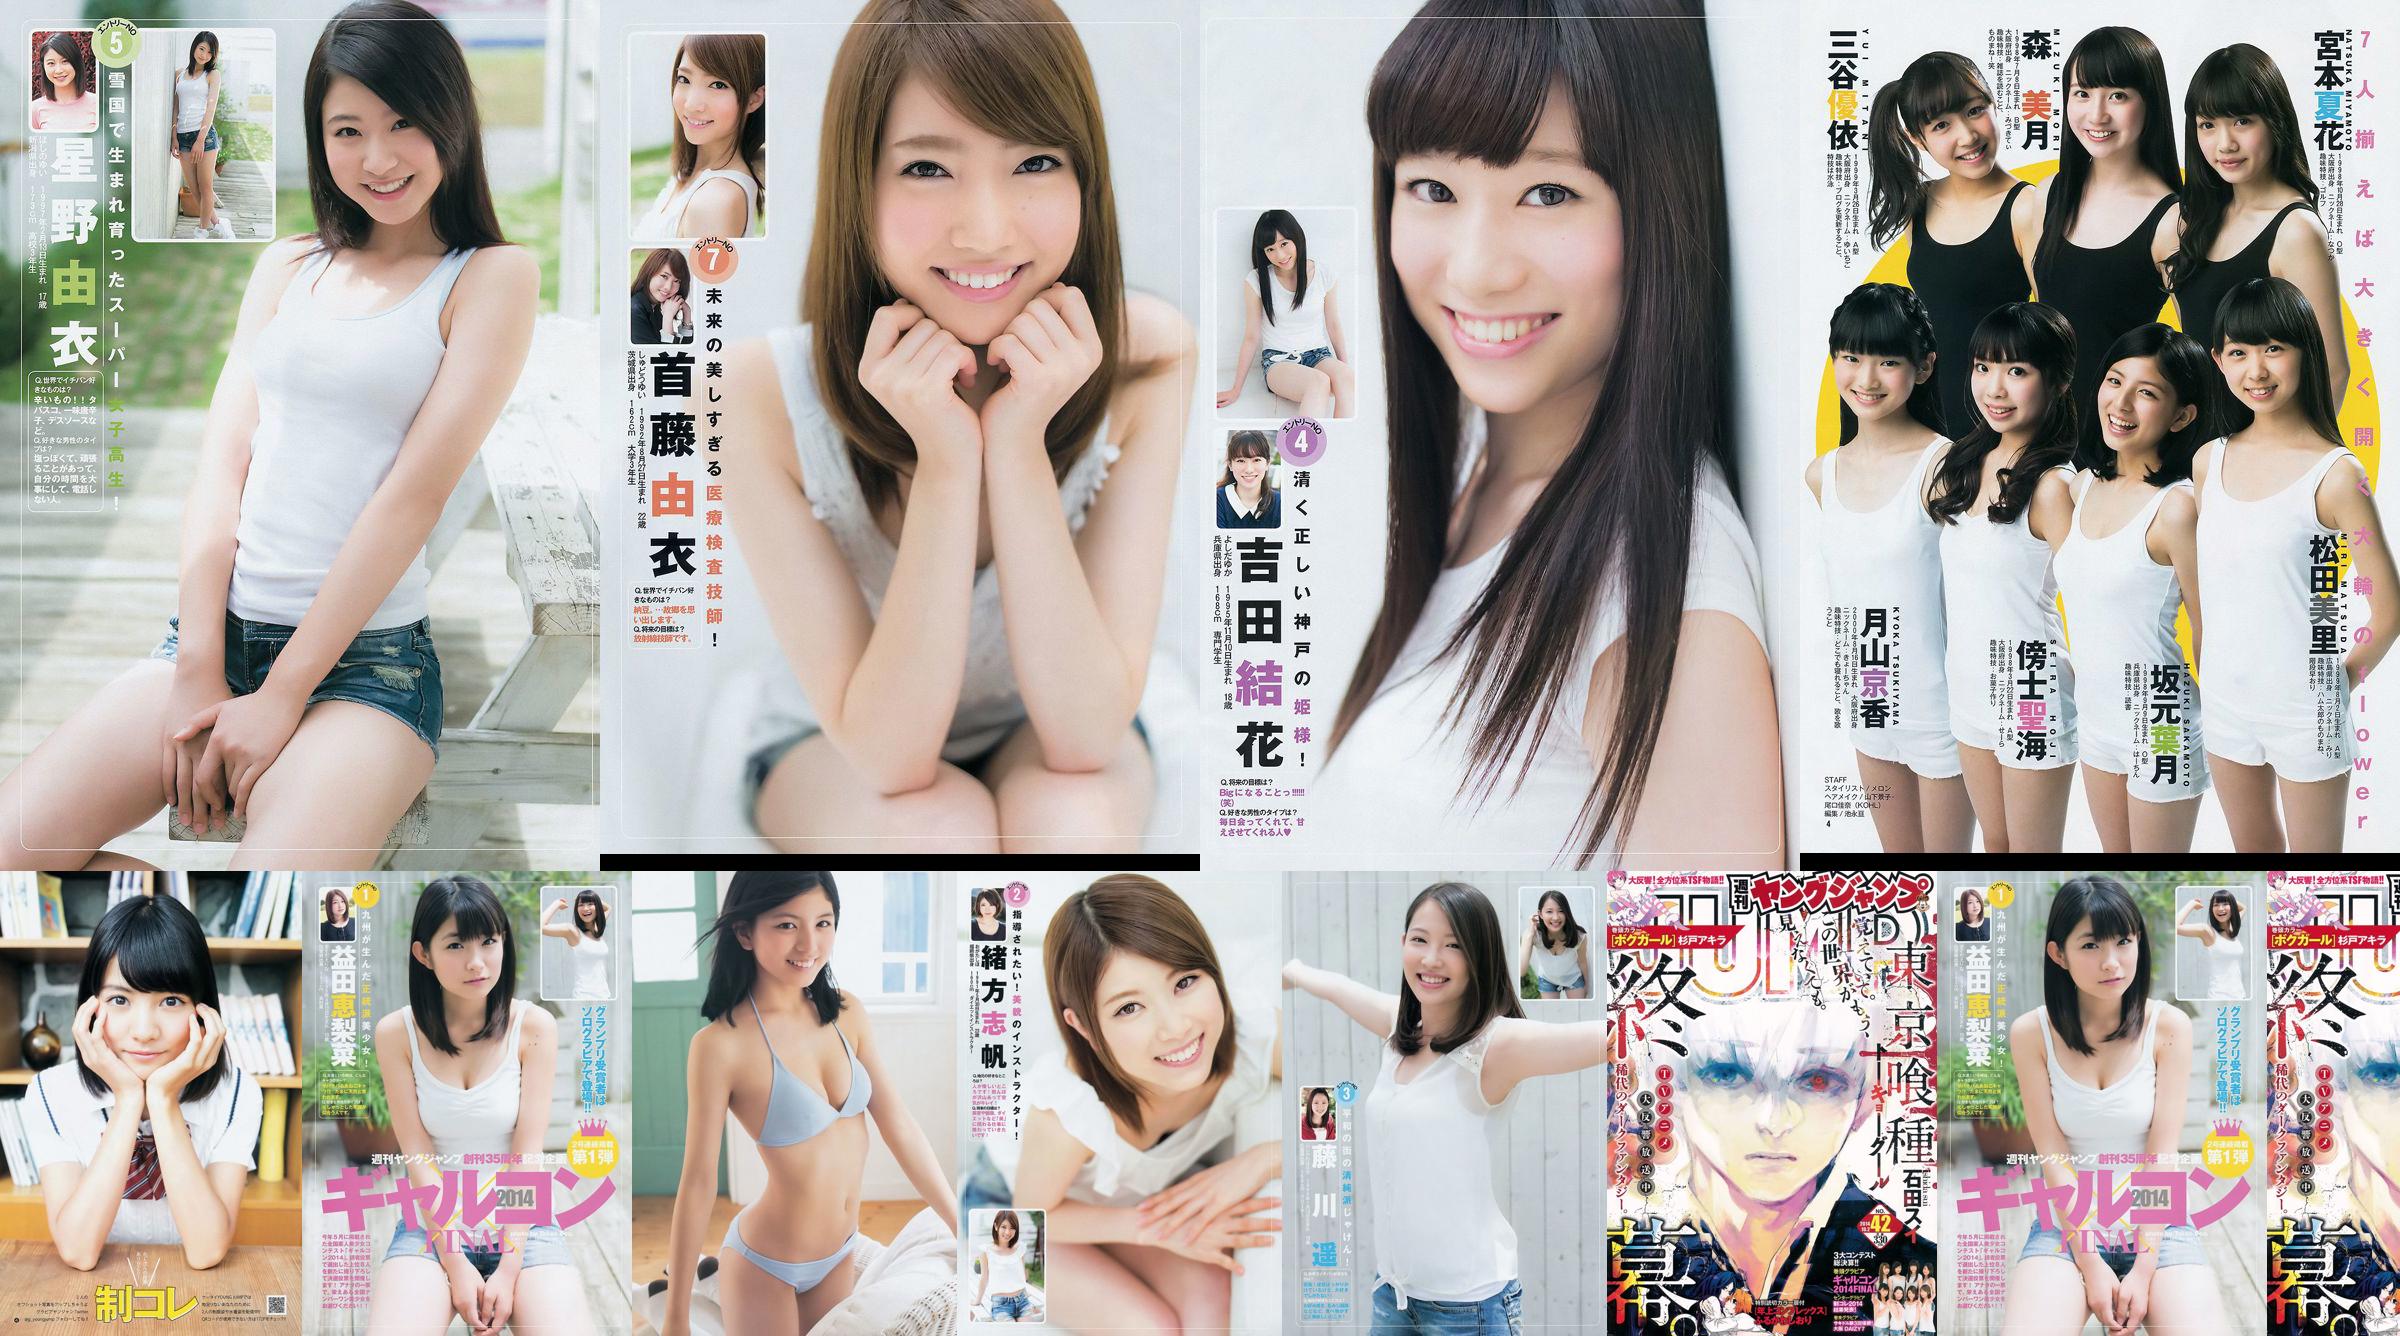 갸루콘 2014 제 이거 궁극 2014 오사카 DAIZY7 [Weekly Young Jump] 2014 년 No.42 사진 杂志 No.600736 페이지 1